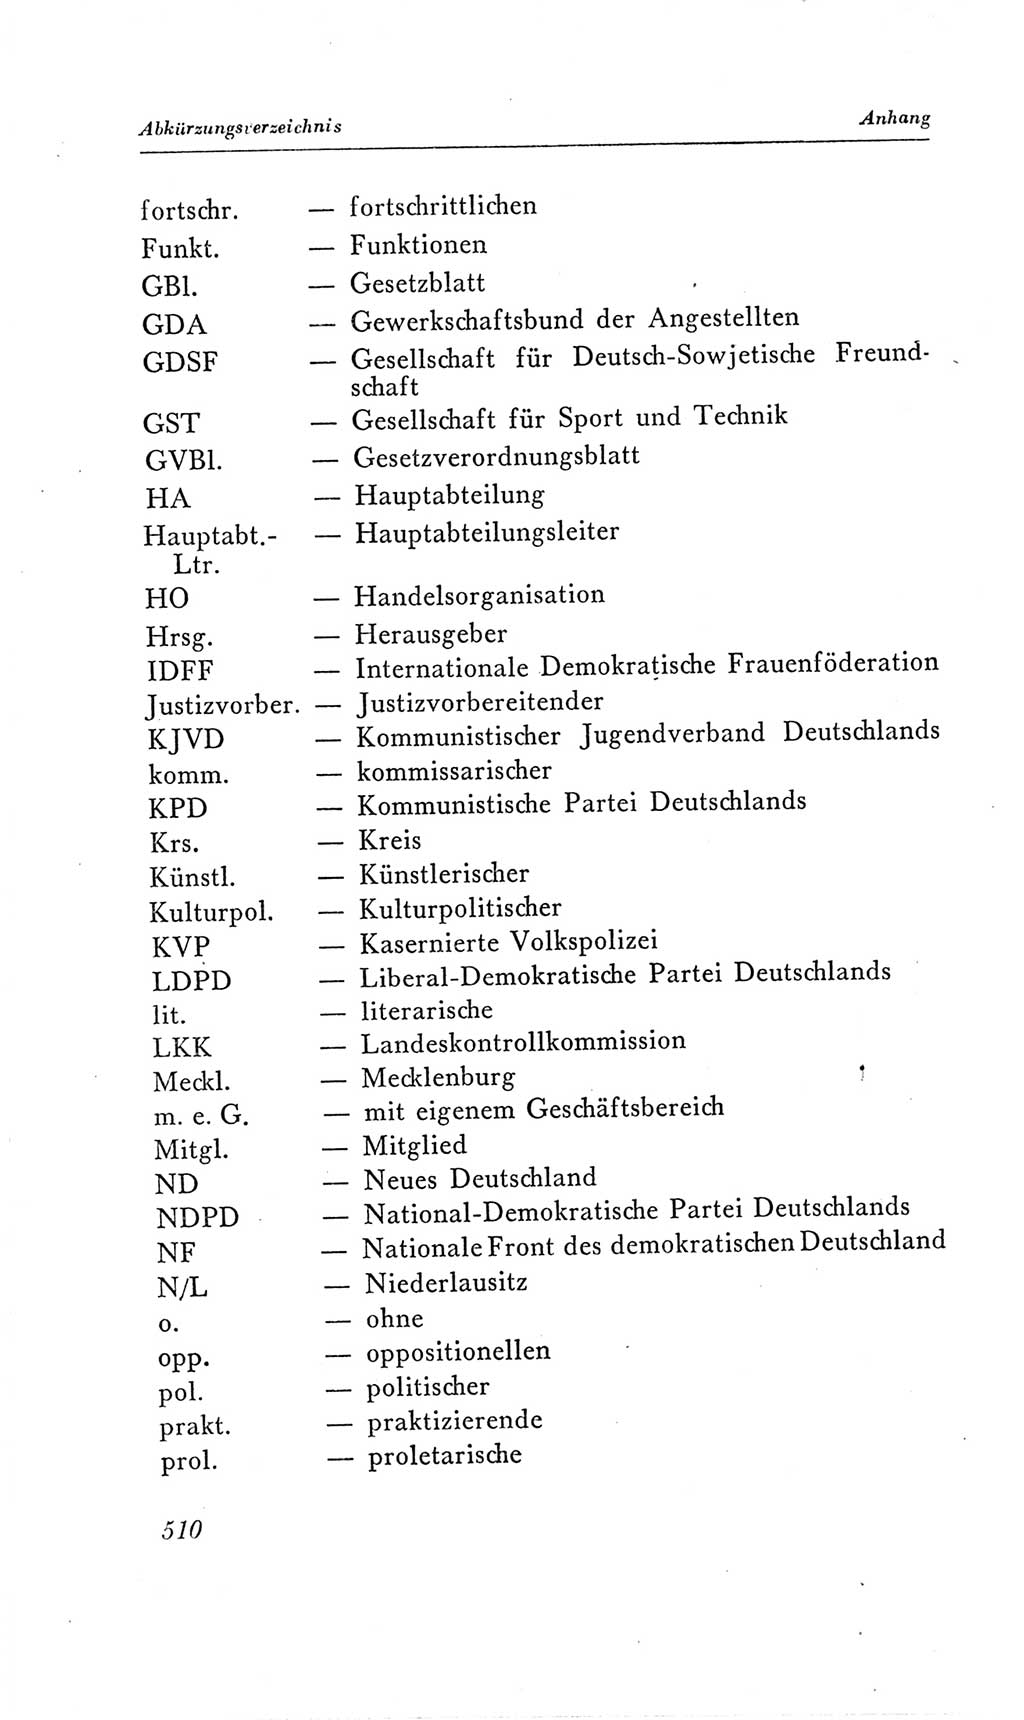 Handbuch der Volkskammer (VK) der Deutschen Demokratischen Republik (DDR), 2. Wahlperiode 1954-1958, Seite 510 (Hdb. VK. DDR, 2. WP. 1954-1958, S. 510)